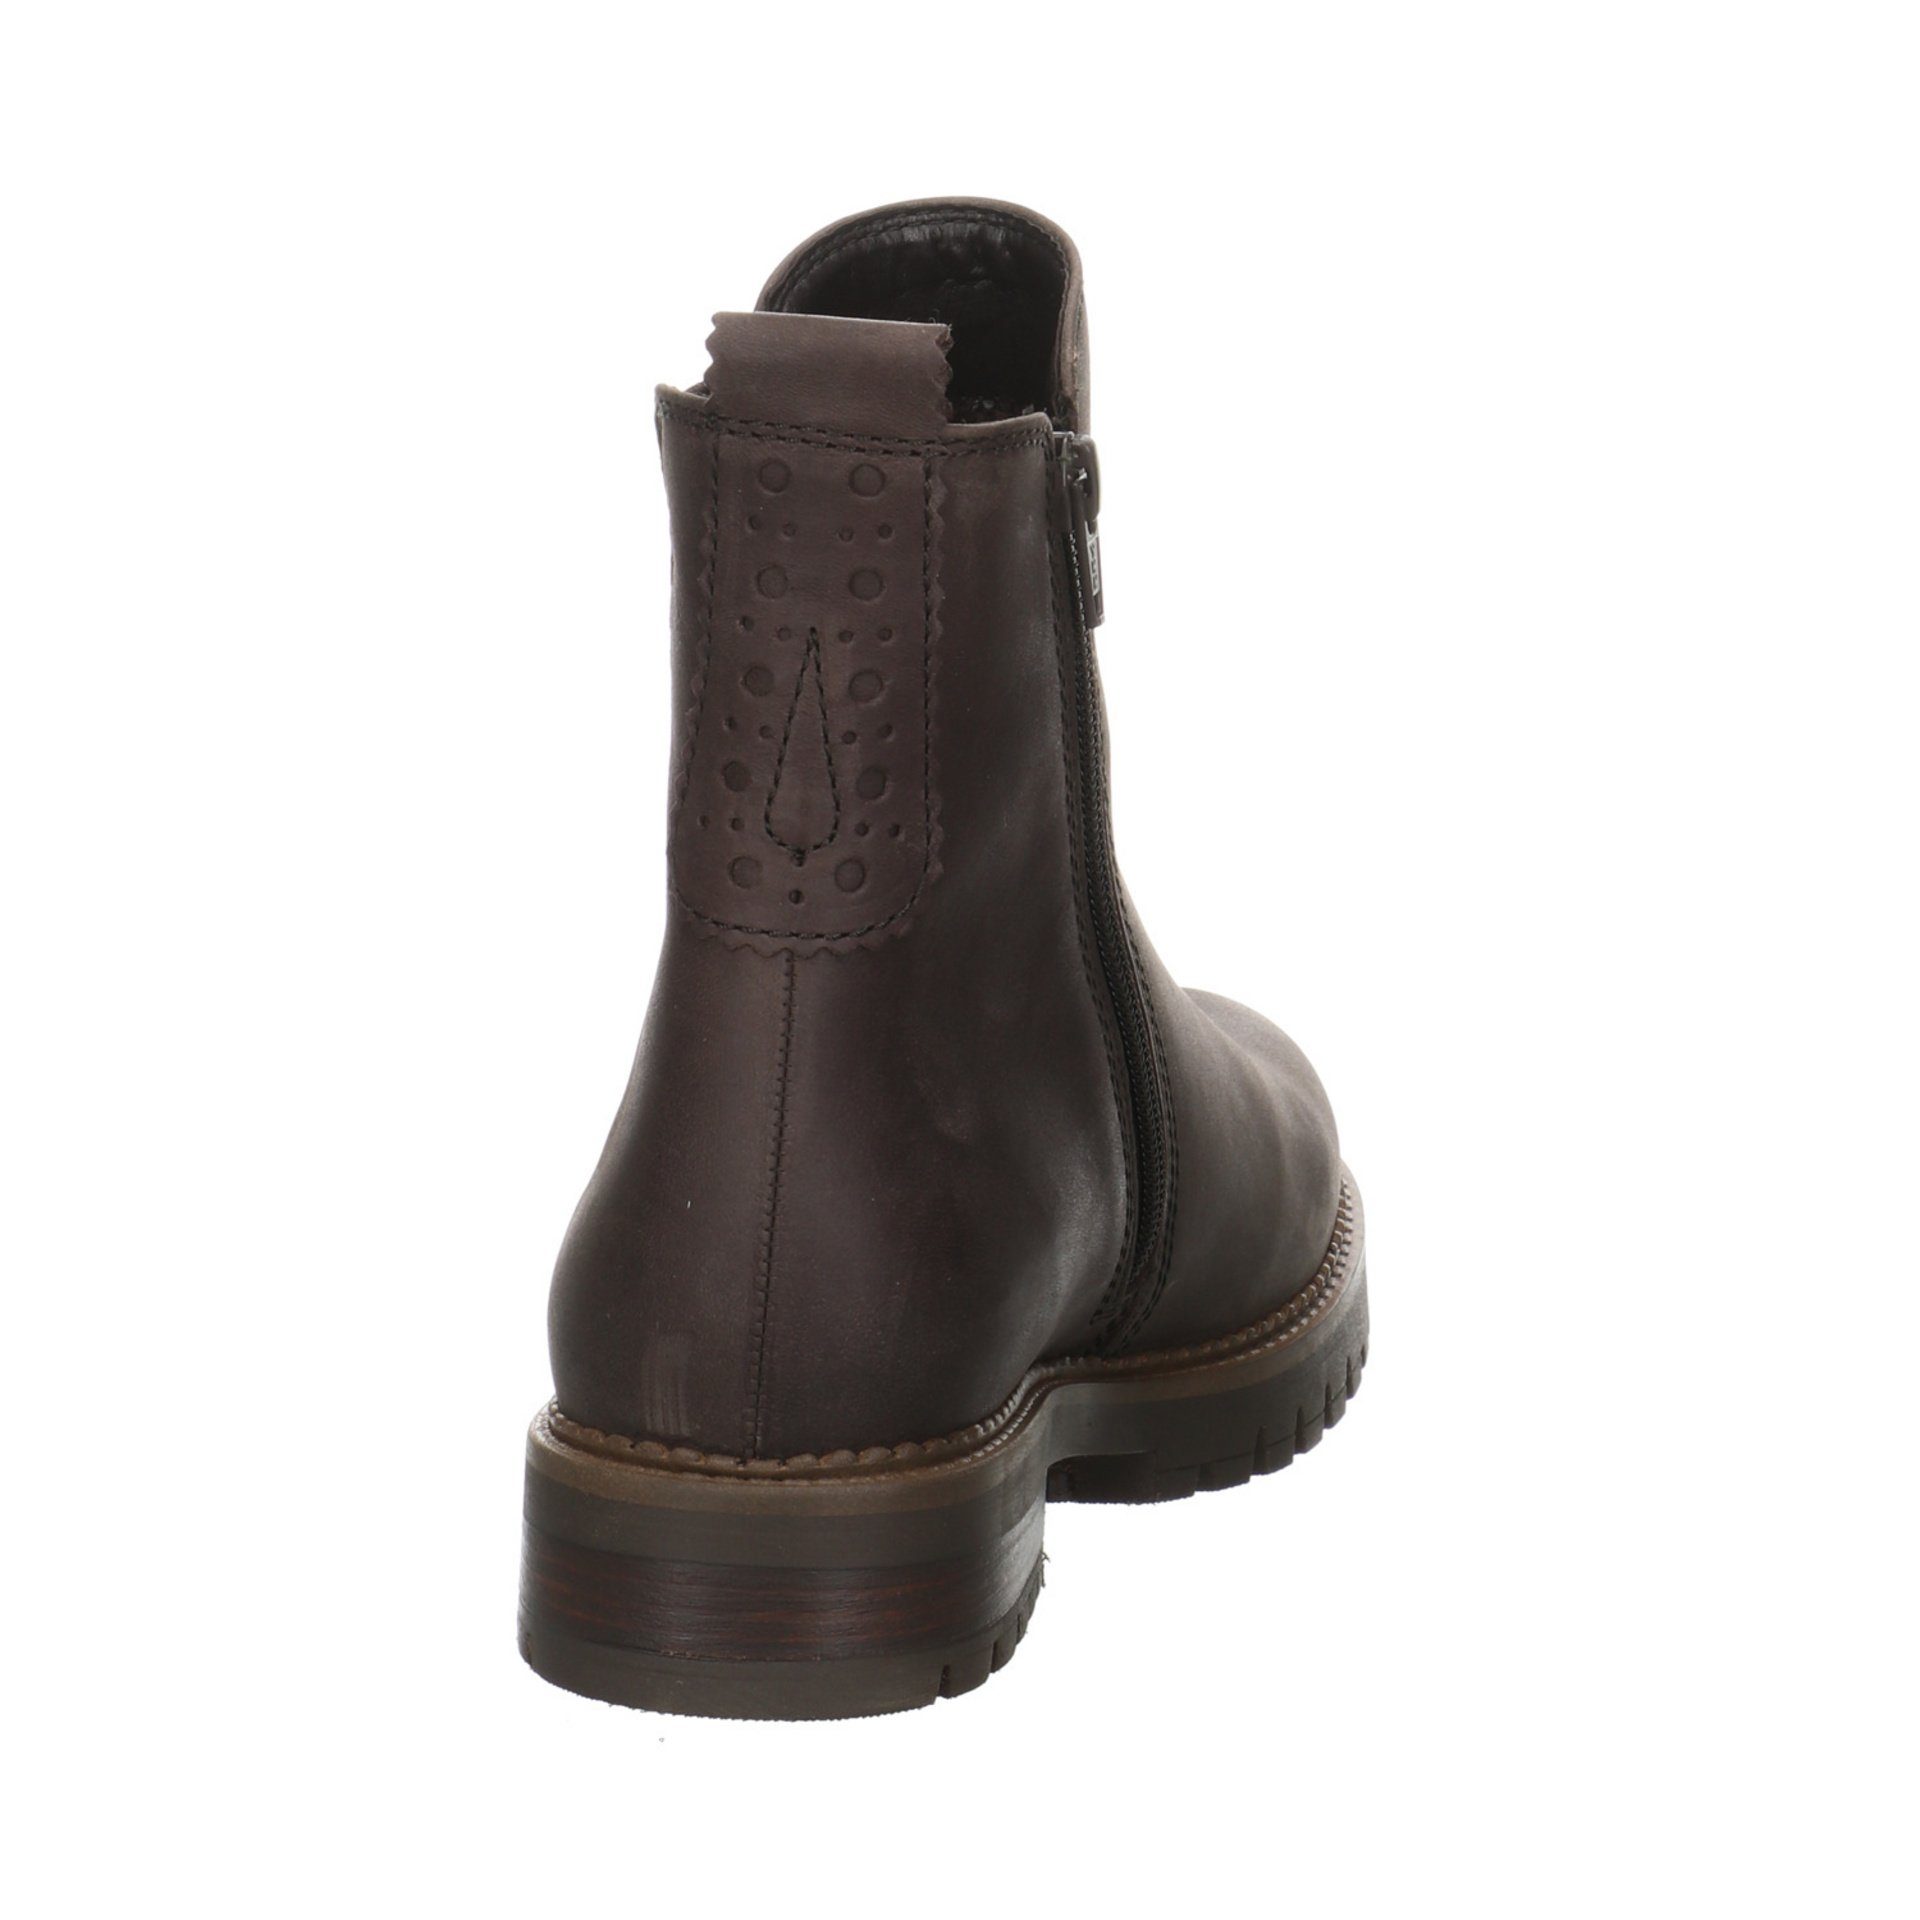 Gabor Damen Leder-/Textilkombination (espresso) Stiefel Braun Schuhe Stiefel Chelsea-Boots